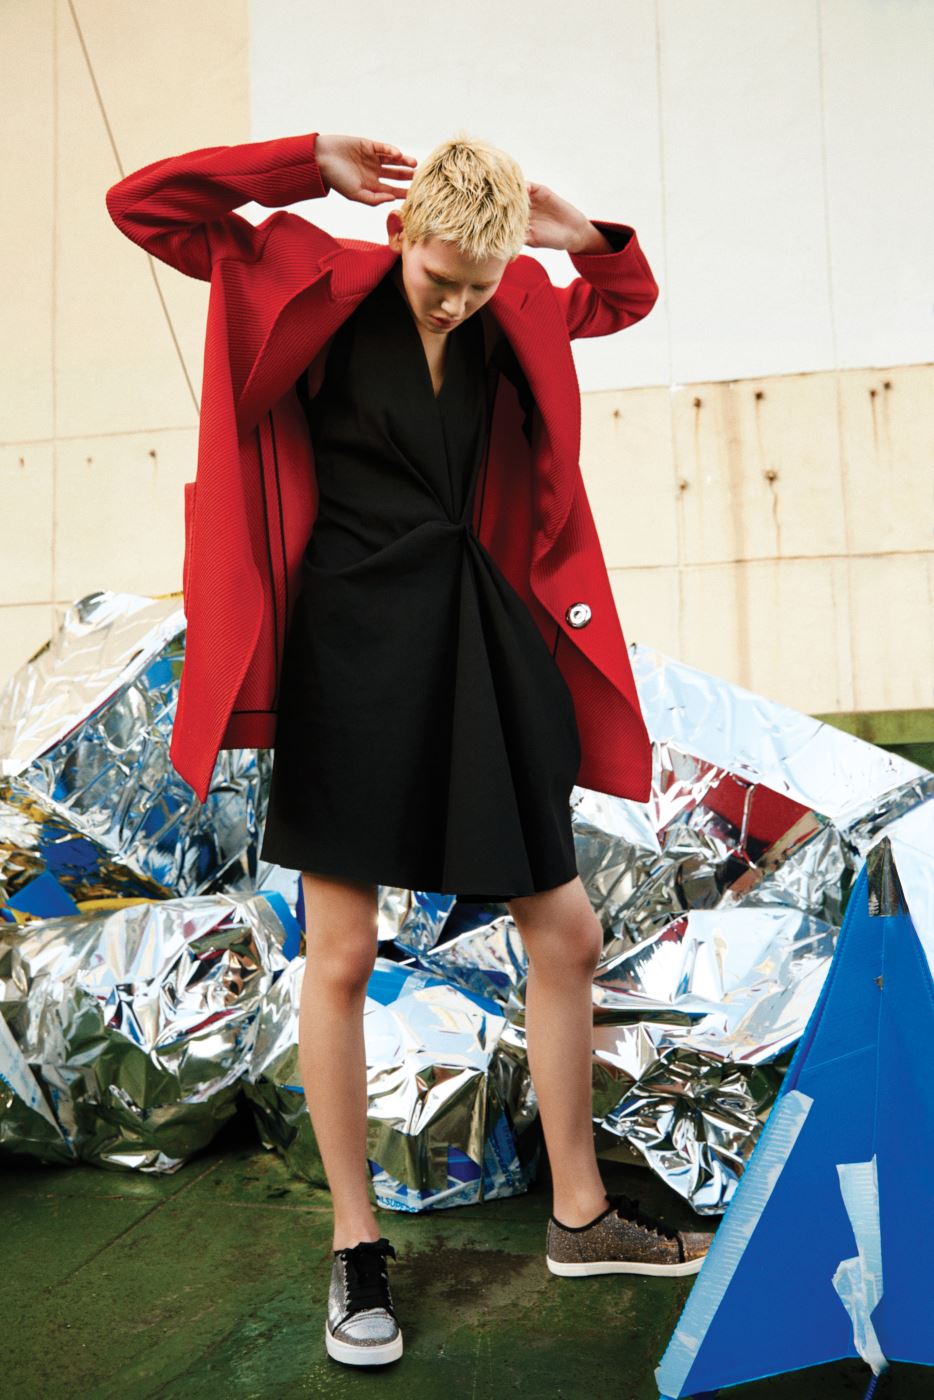 강렬한 빨간색 트윌 조직 코트와 보 장식 검정 드레스, 글리터 소재 스니커즈는 모두 Lanvin 제품.